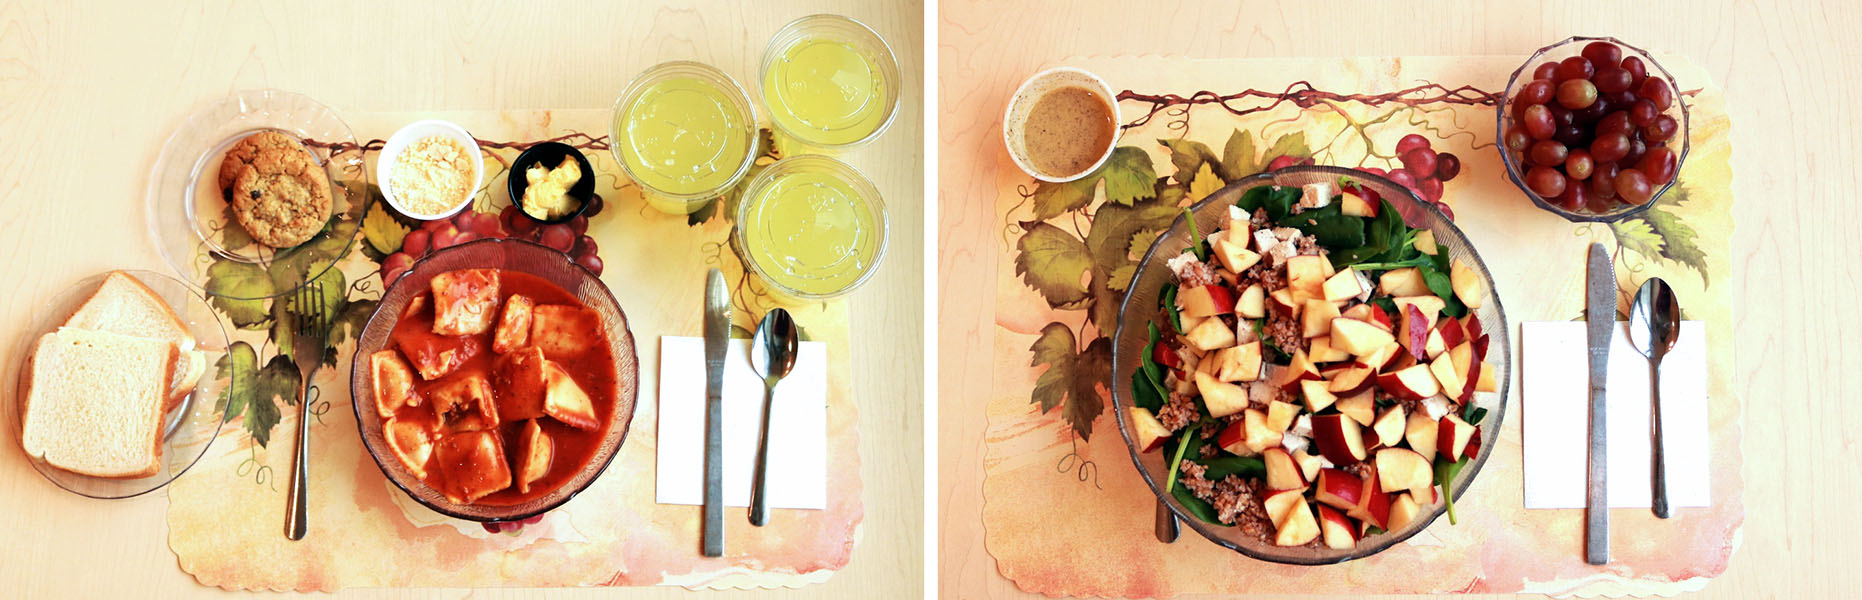 Foto de dos comidas, una es un almuerzo ultraprocesado y la otra es uno mínimamente procesado.